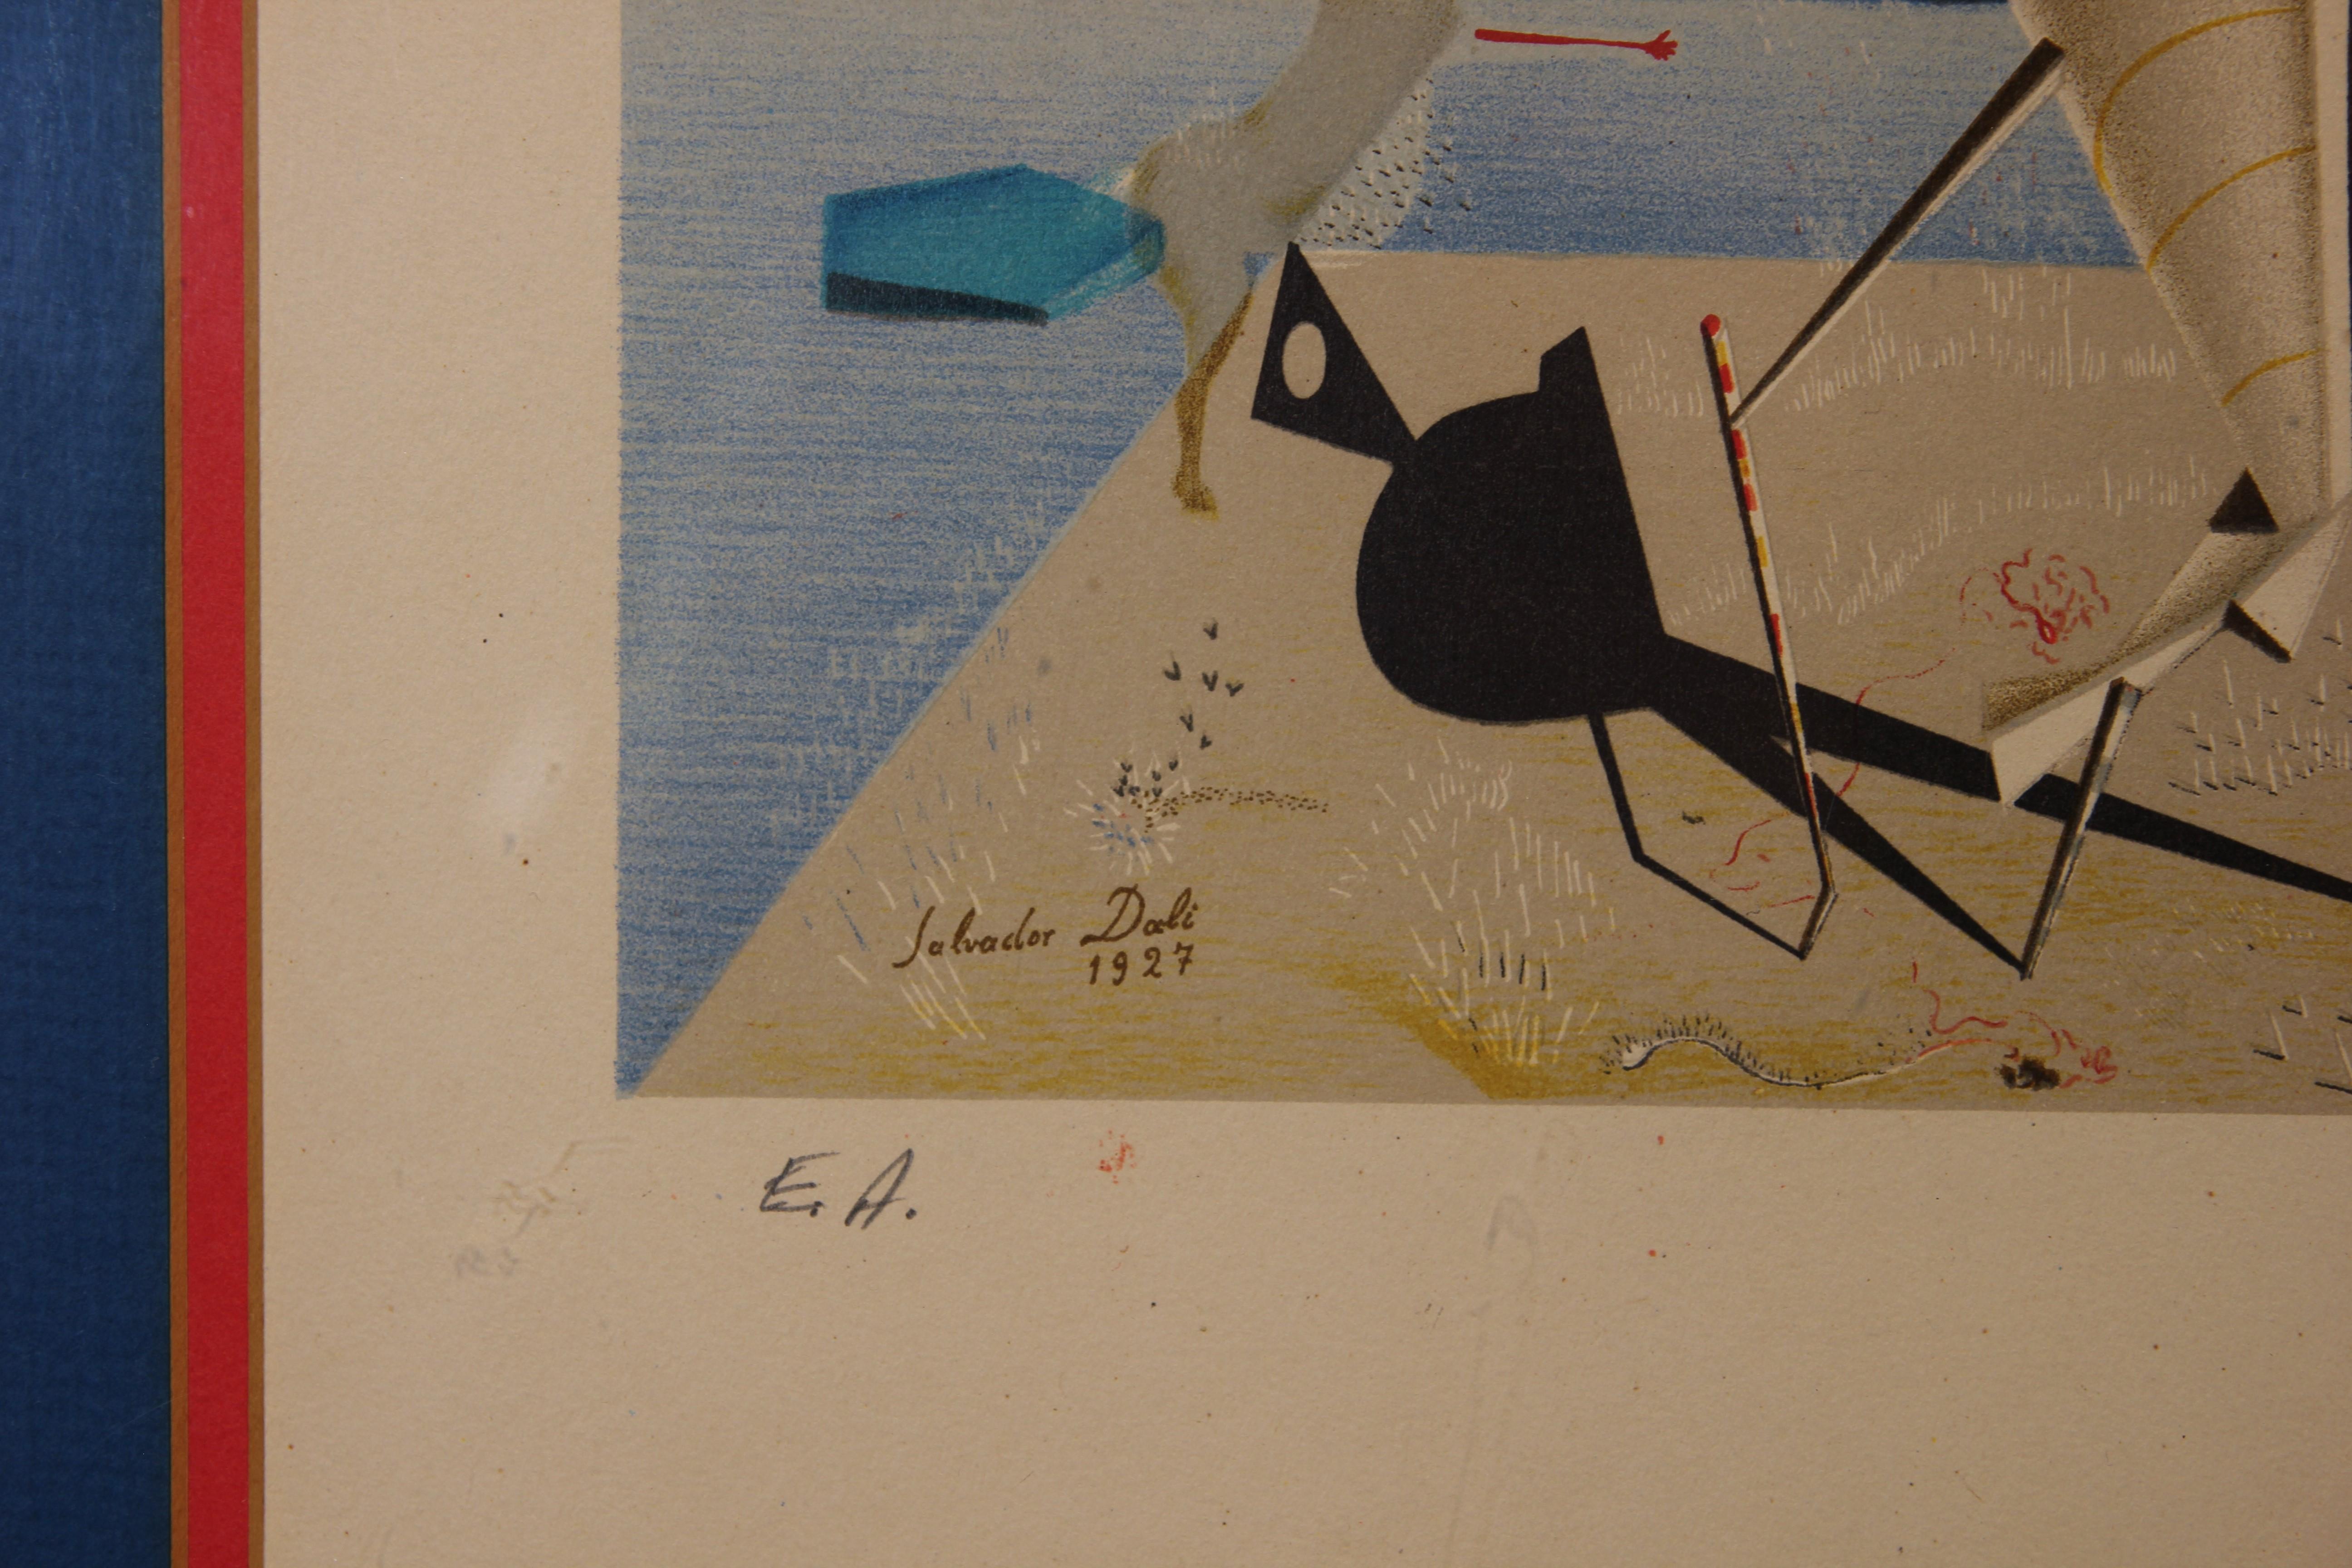 Der Druck des berühmten surrealistischen Gemäldes „Apparatus and Hand“ von Salvador Dali aus dem Jahr 1927 wurde in einer limitierten Auflage hergestellt. Der surrealistische Druck hat verschiedene geometrische Formen mit einer Figur:: die mit